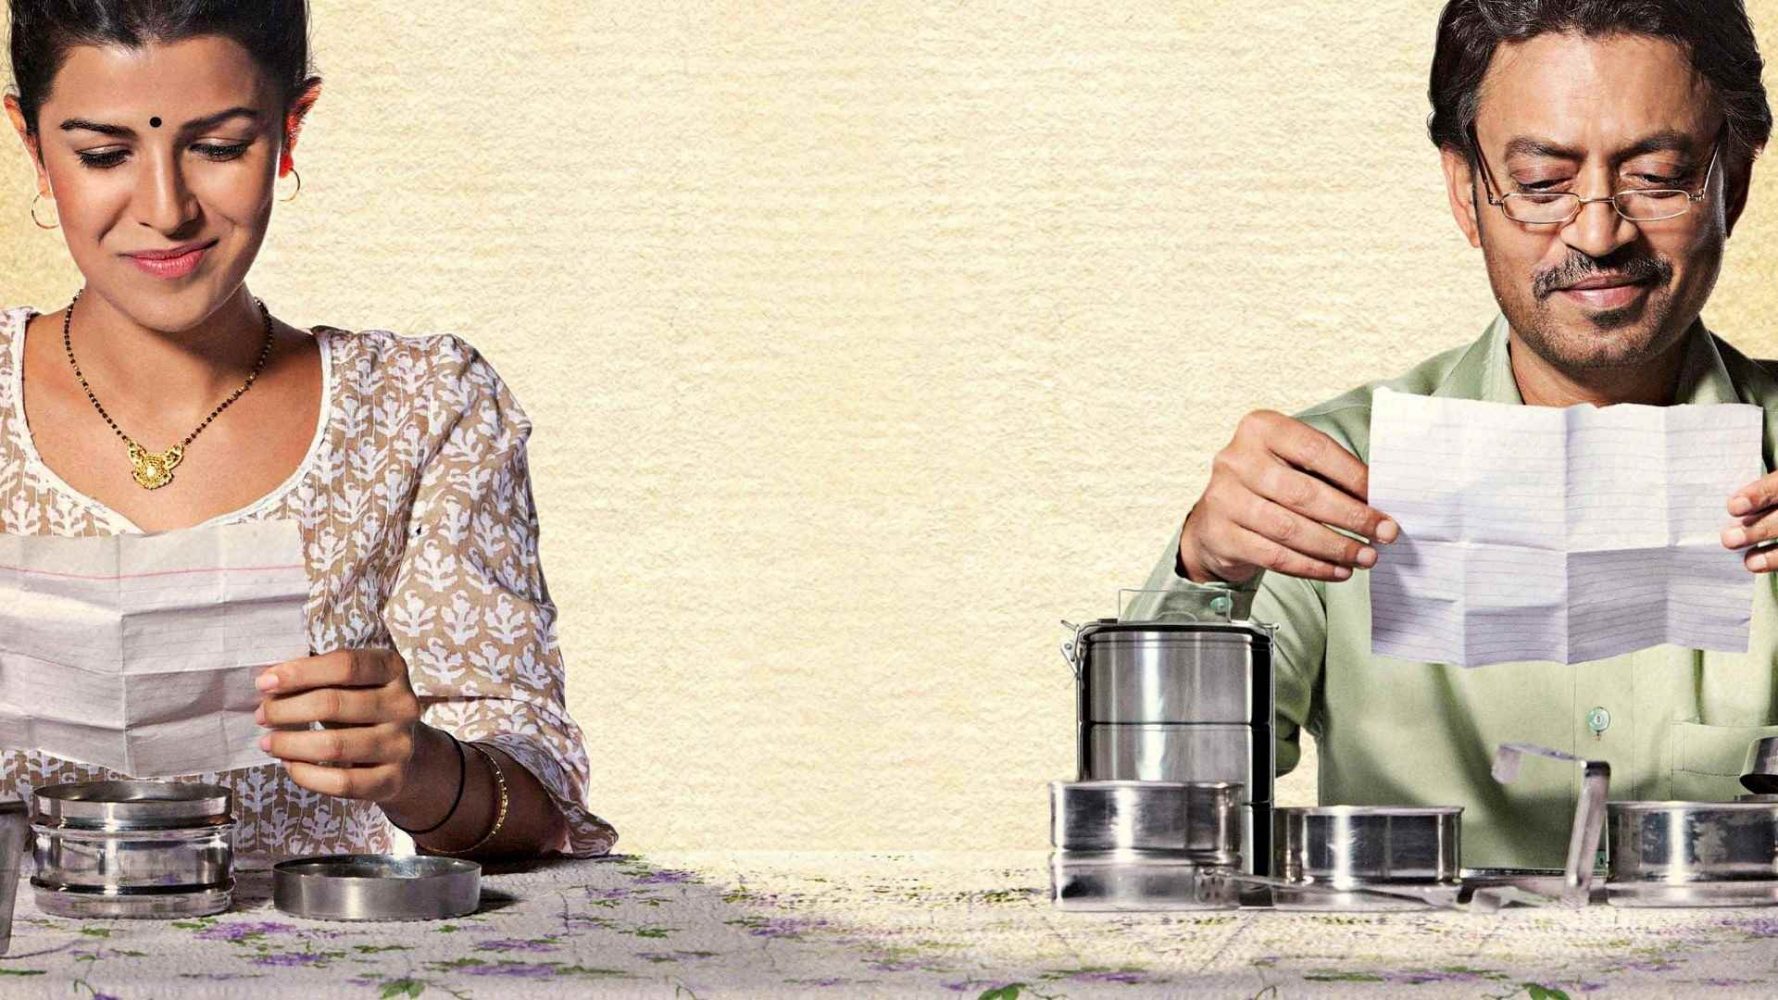 Phim Lãng Mạn Ấn Độ Hay Nhất: Chiếc Hộp Kỳ Lạ - The Lunchbox (2013)